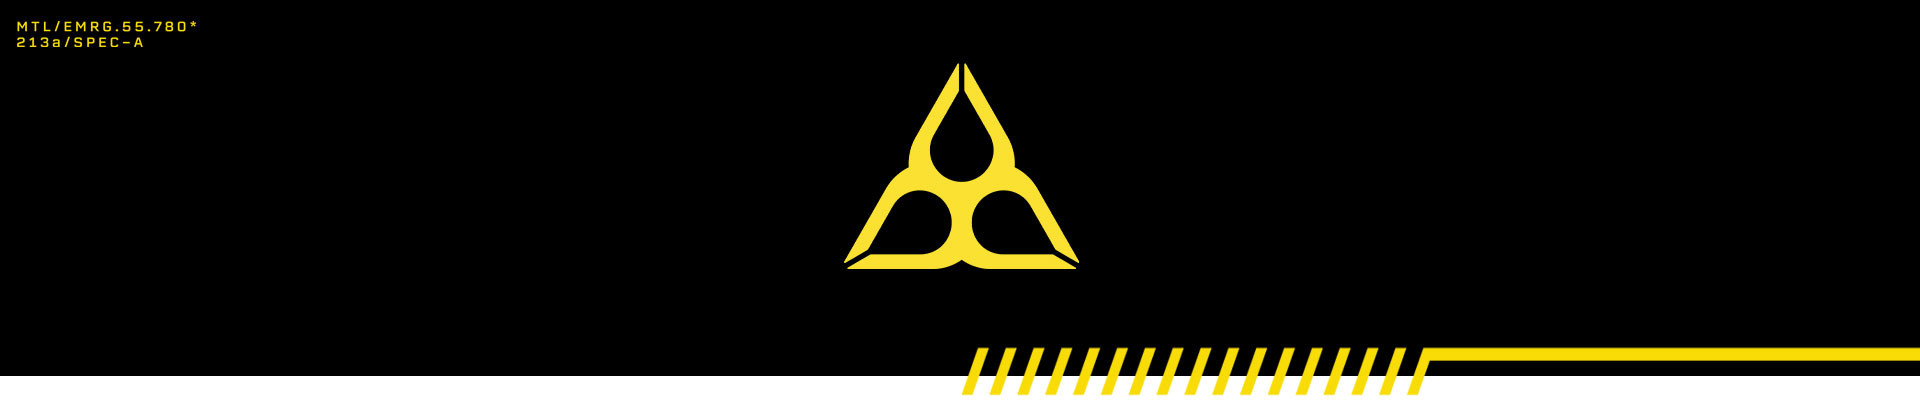 Datos de un equipo con letra naranja y un símbolo de peligro formado por tres gotas.